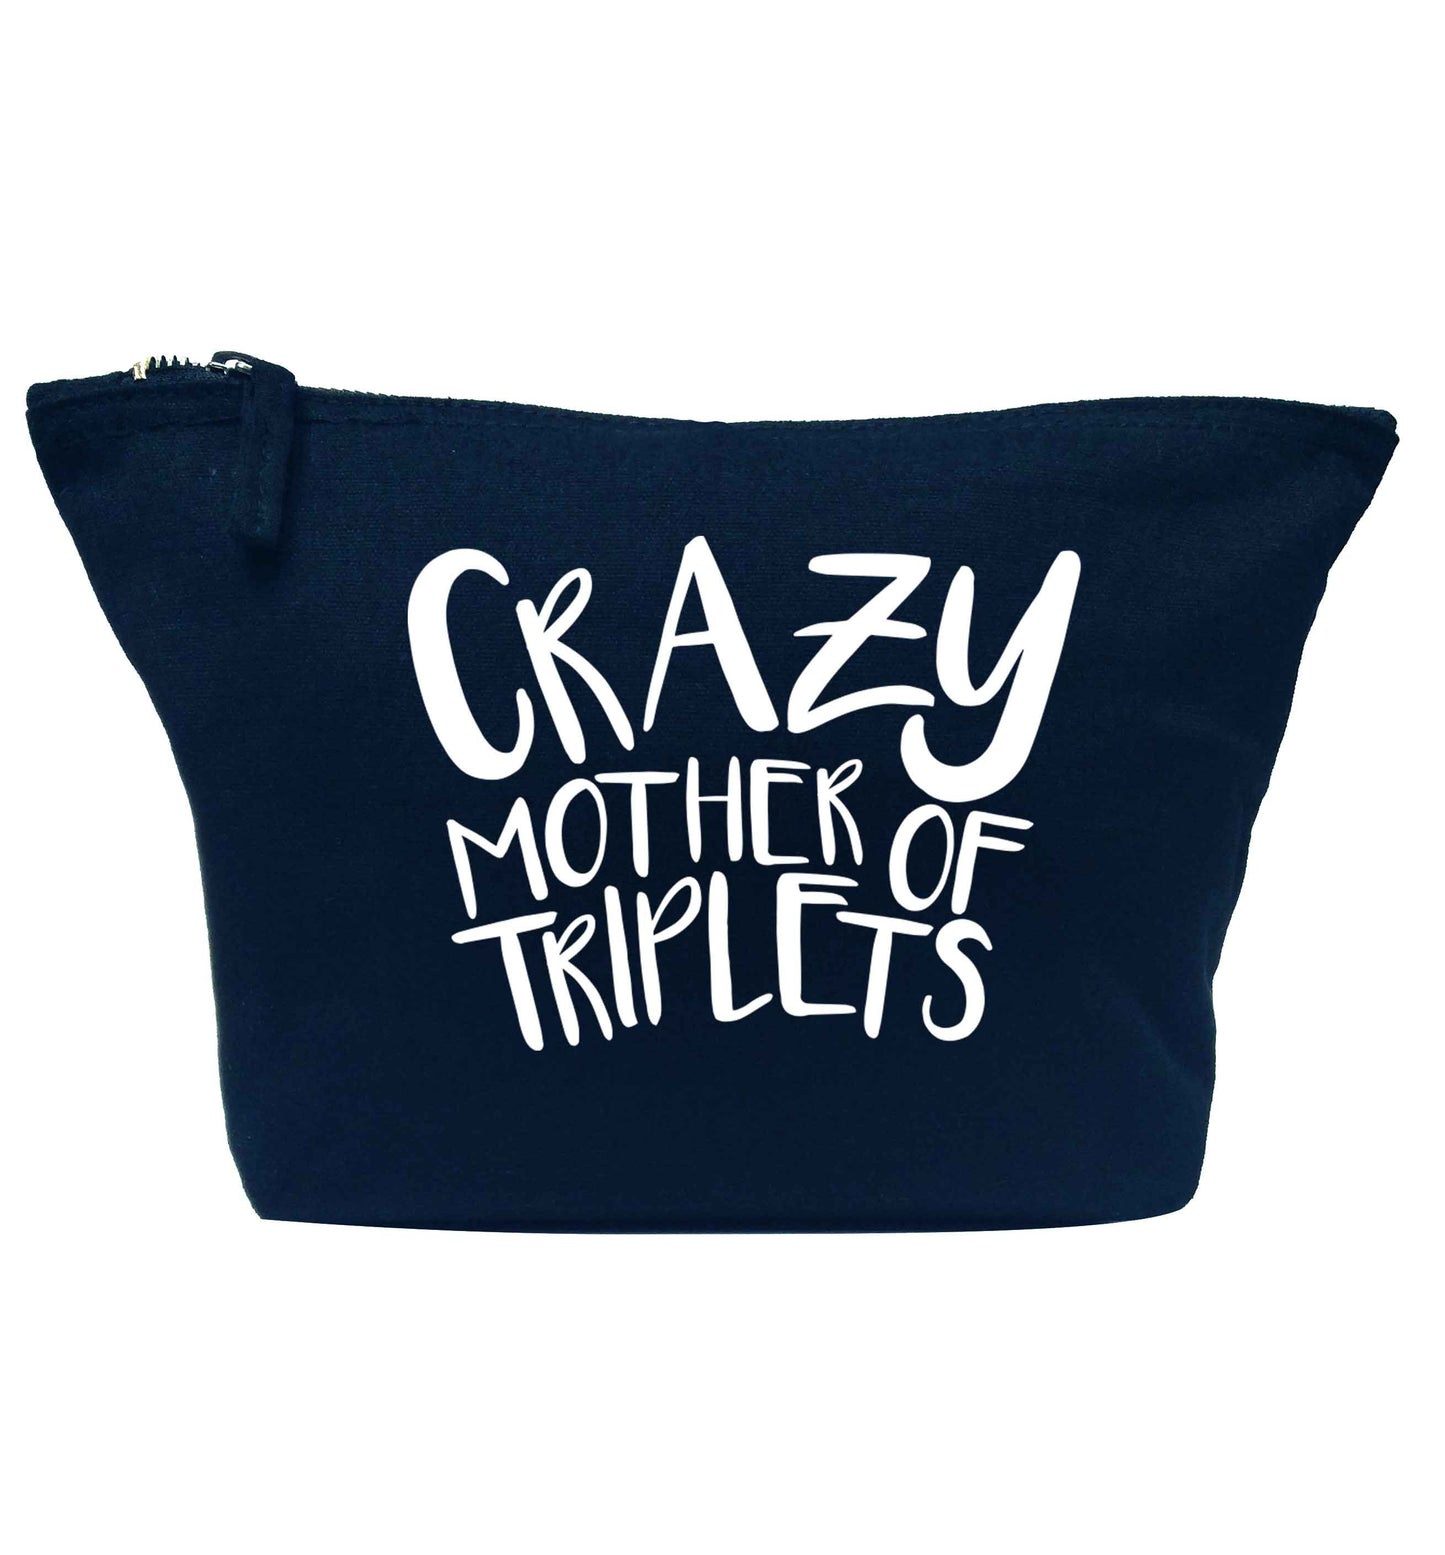 Crazy mother of triplets navy makeup bag